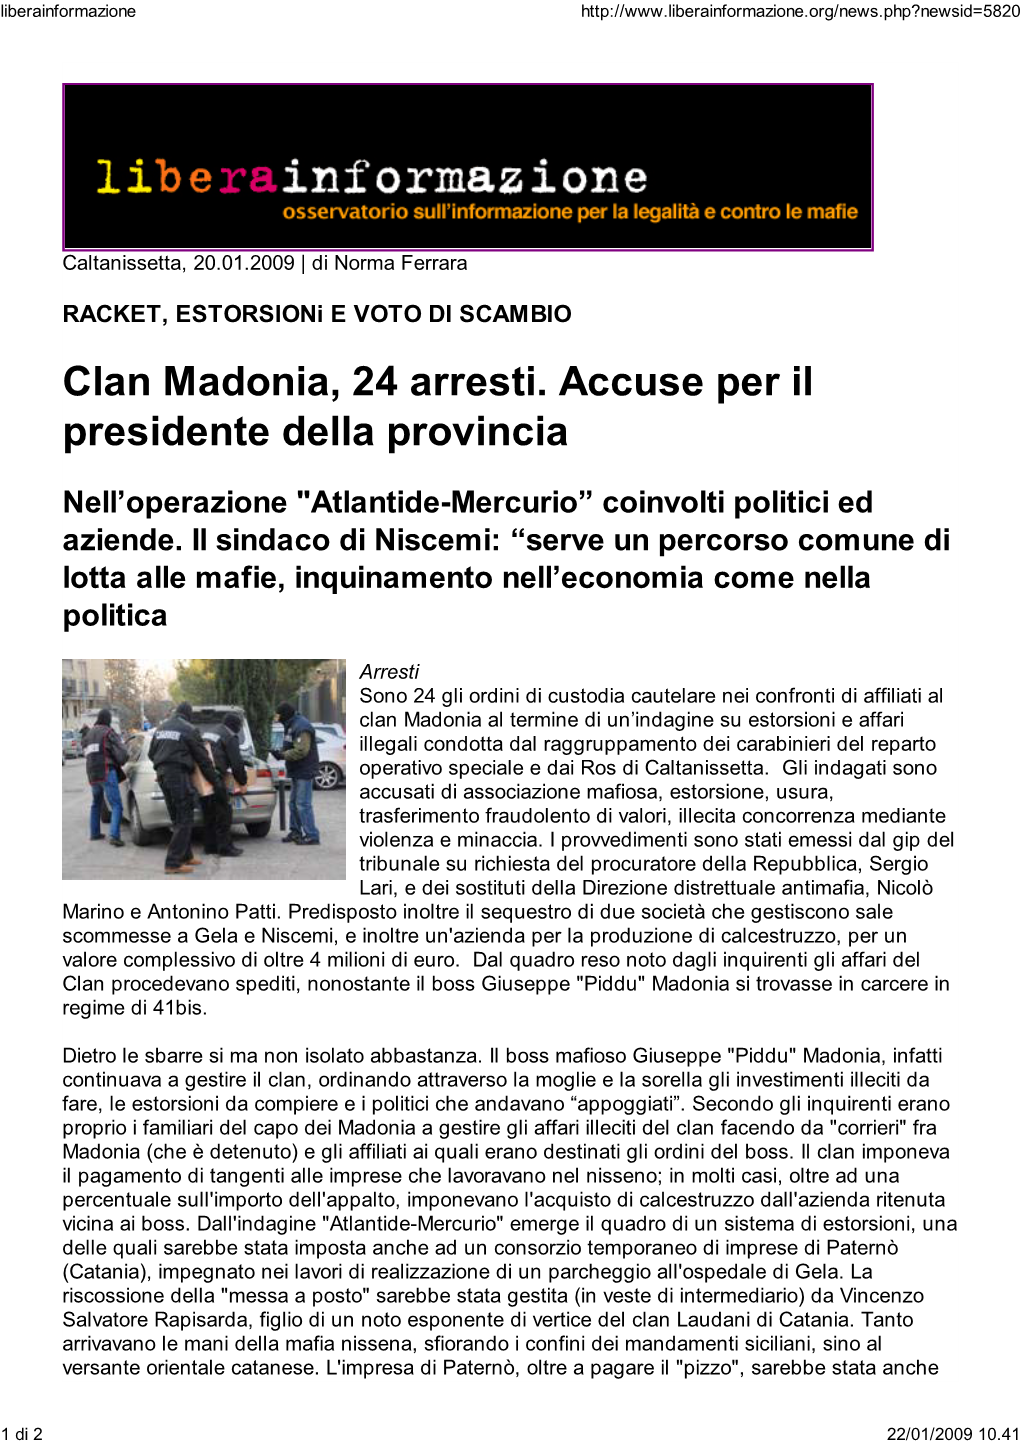 Clan Madonia, 24 Arresti. Accuse Per Il Presidente Della Provincia